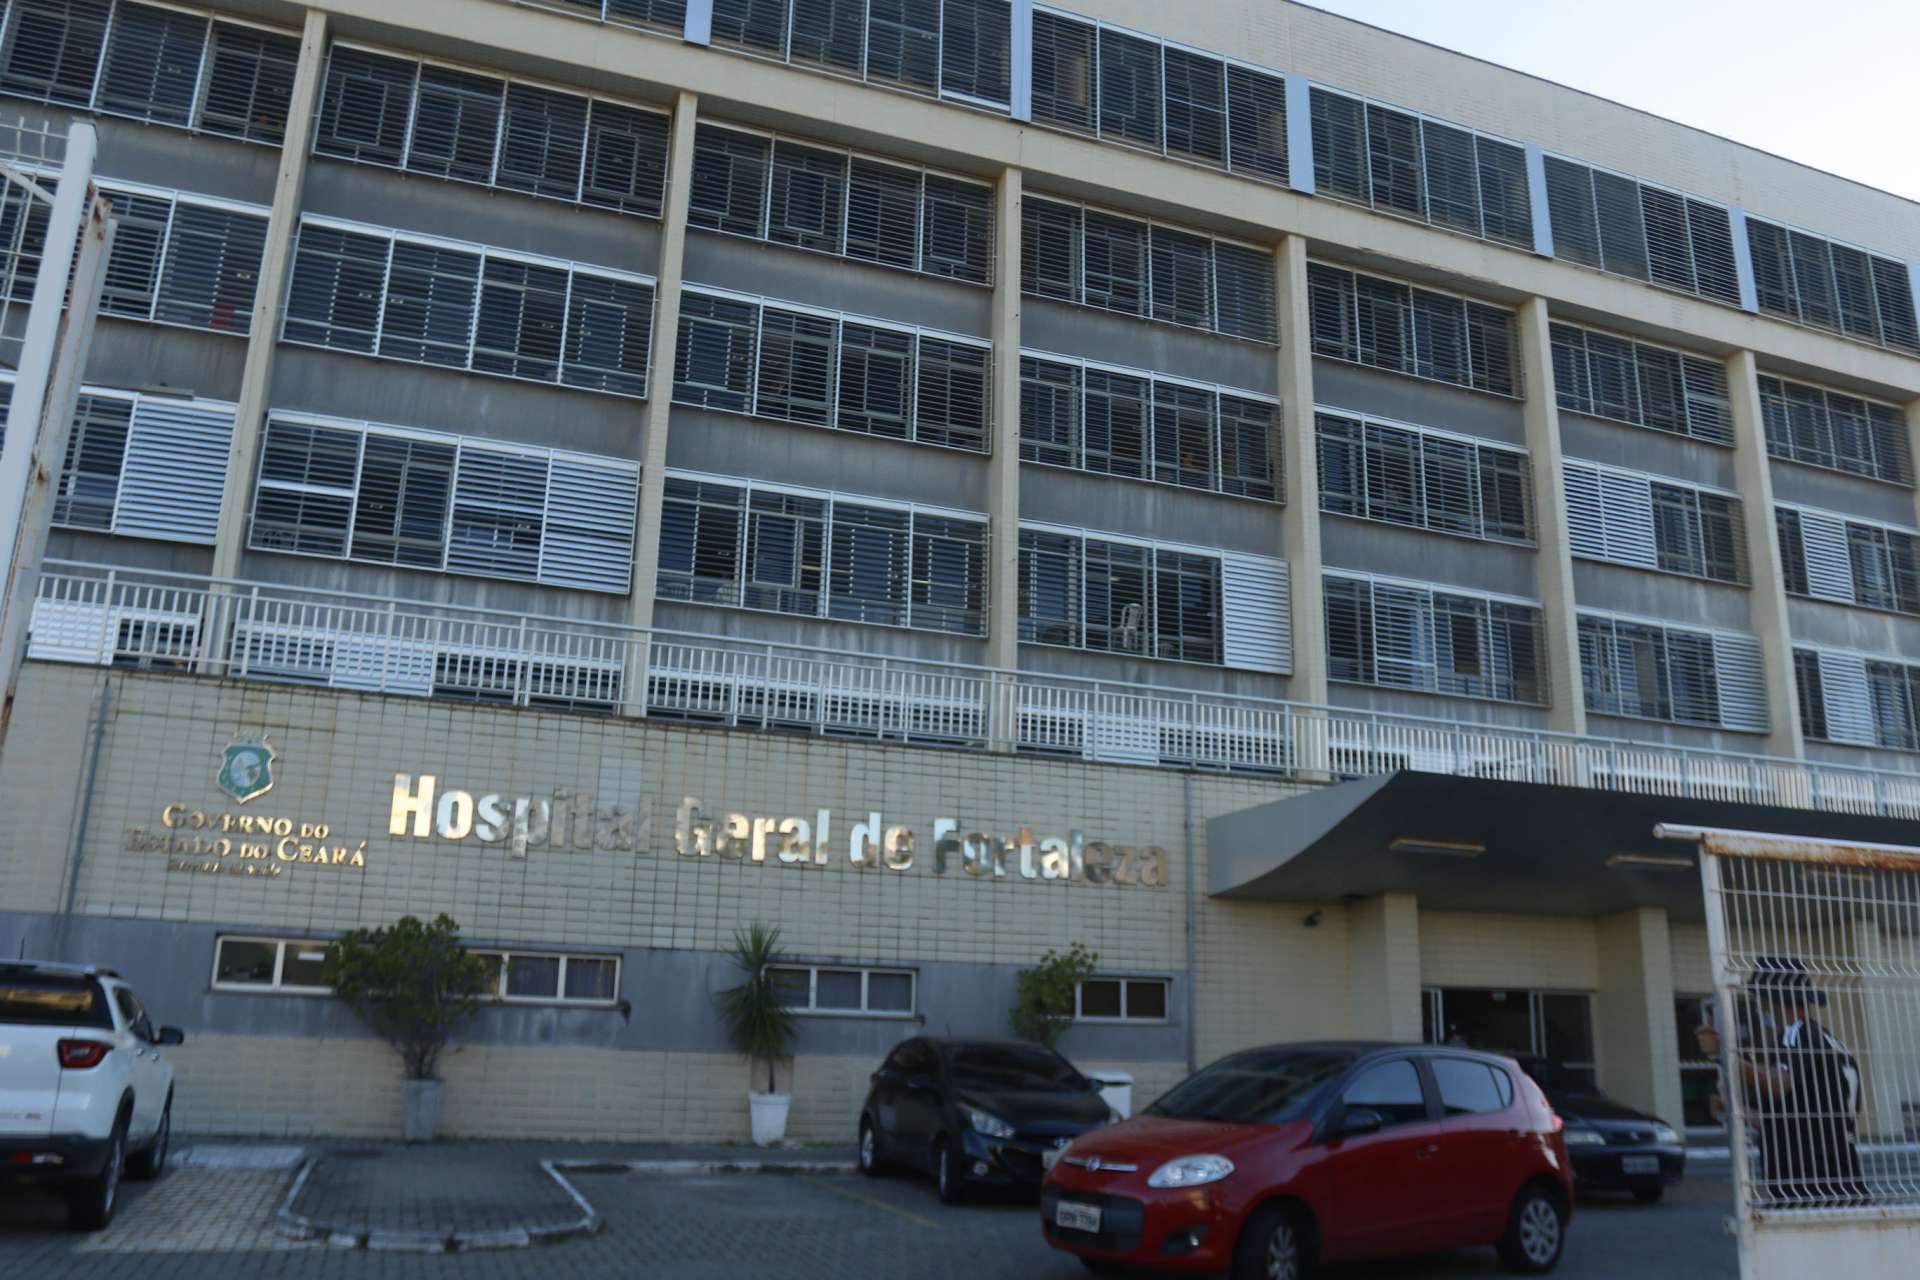 Fachada do Hospital Geral de Fortaleza (Foto: Barbara Moira)